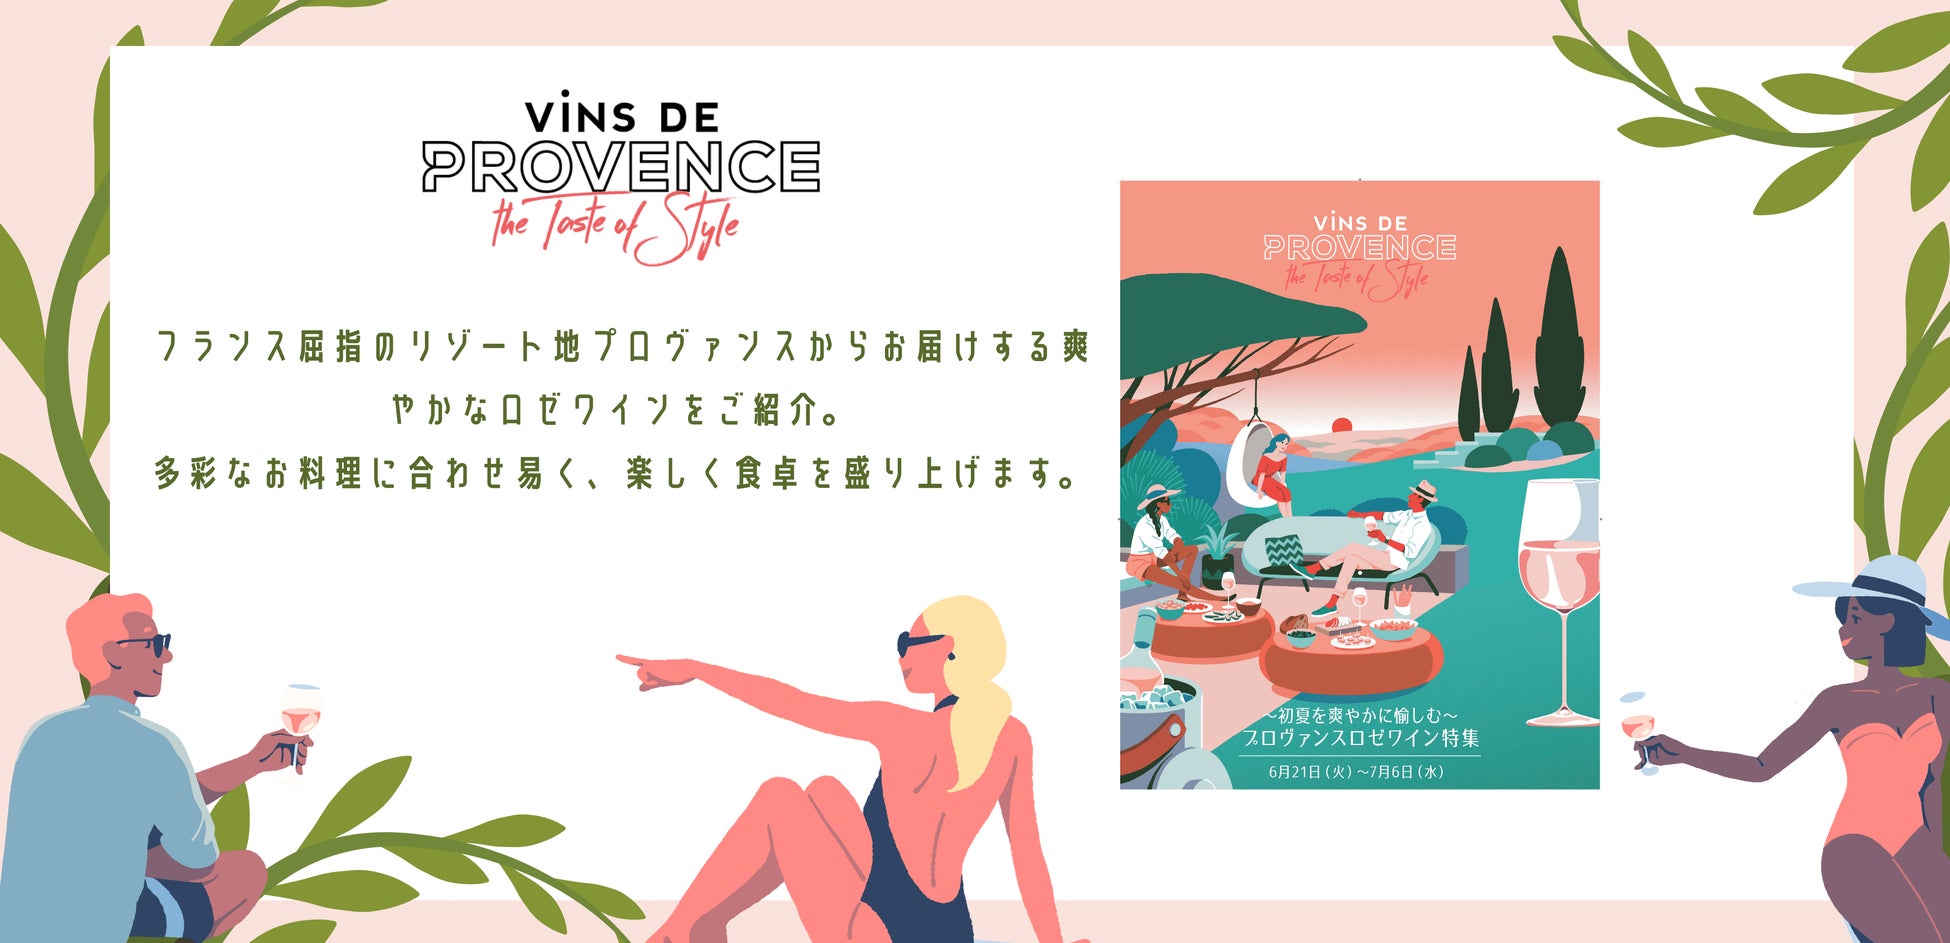 ７月はプロヴァンス月間～プロヴァンスのロゼでリゾート気分を味わって！渋谷 東急百貨店および君嶋屋各店でプロヴァンスロゼフェアを開催